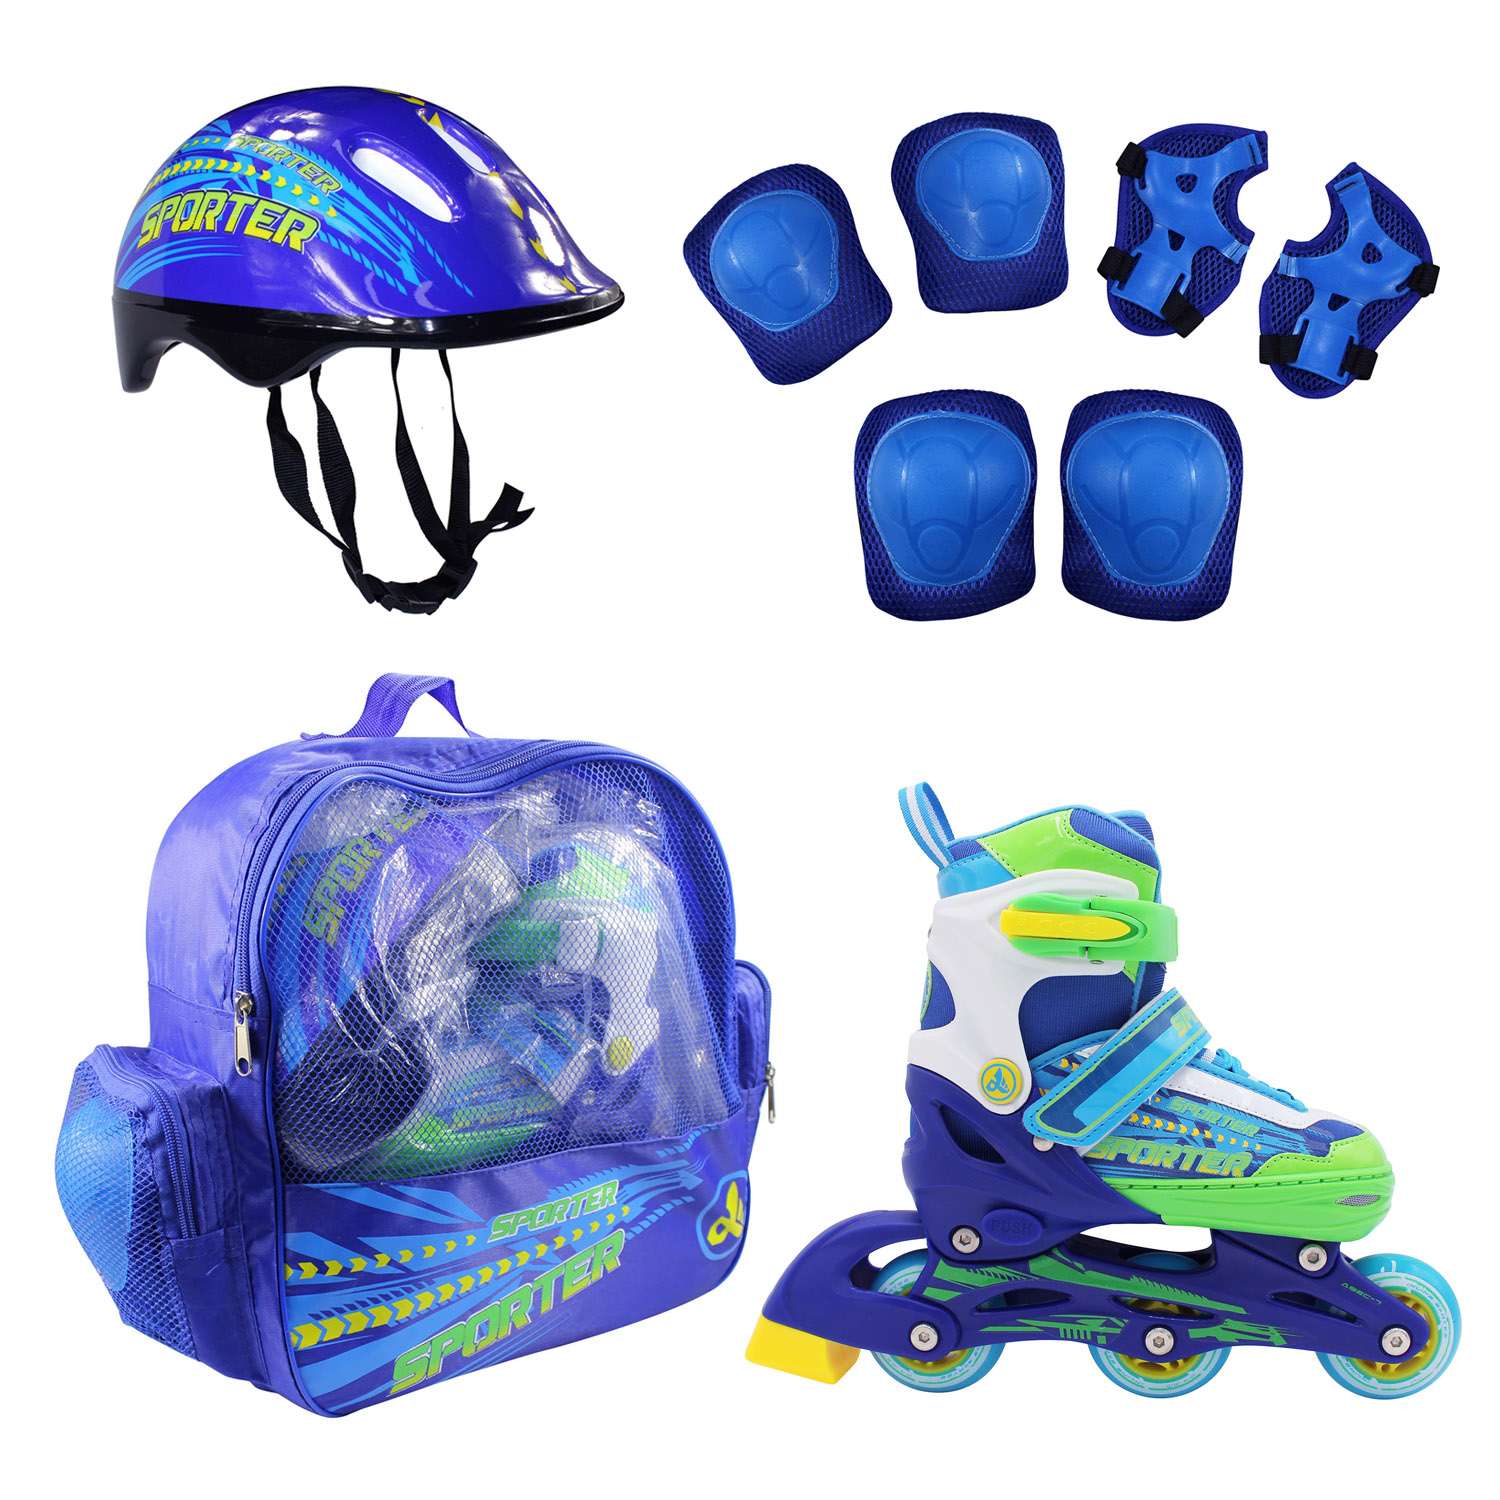 Набор роликовые коньки Alpha Caprice раздвижные Sporter Blue шлем и набор защиты в сумке размер XS 27-30 - фото 1